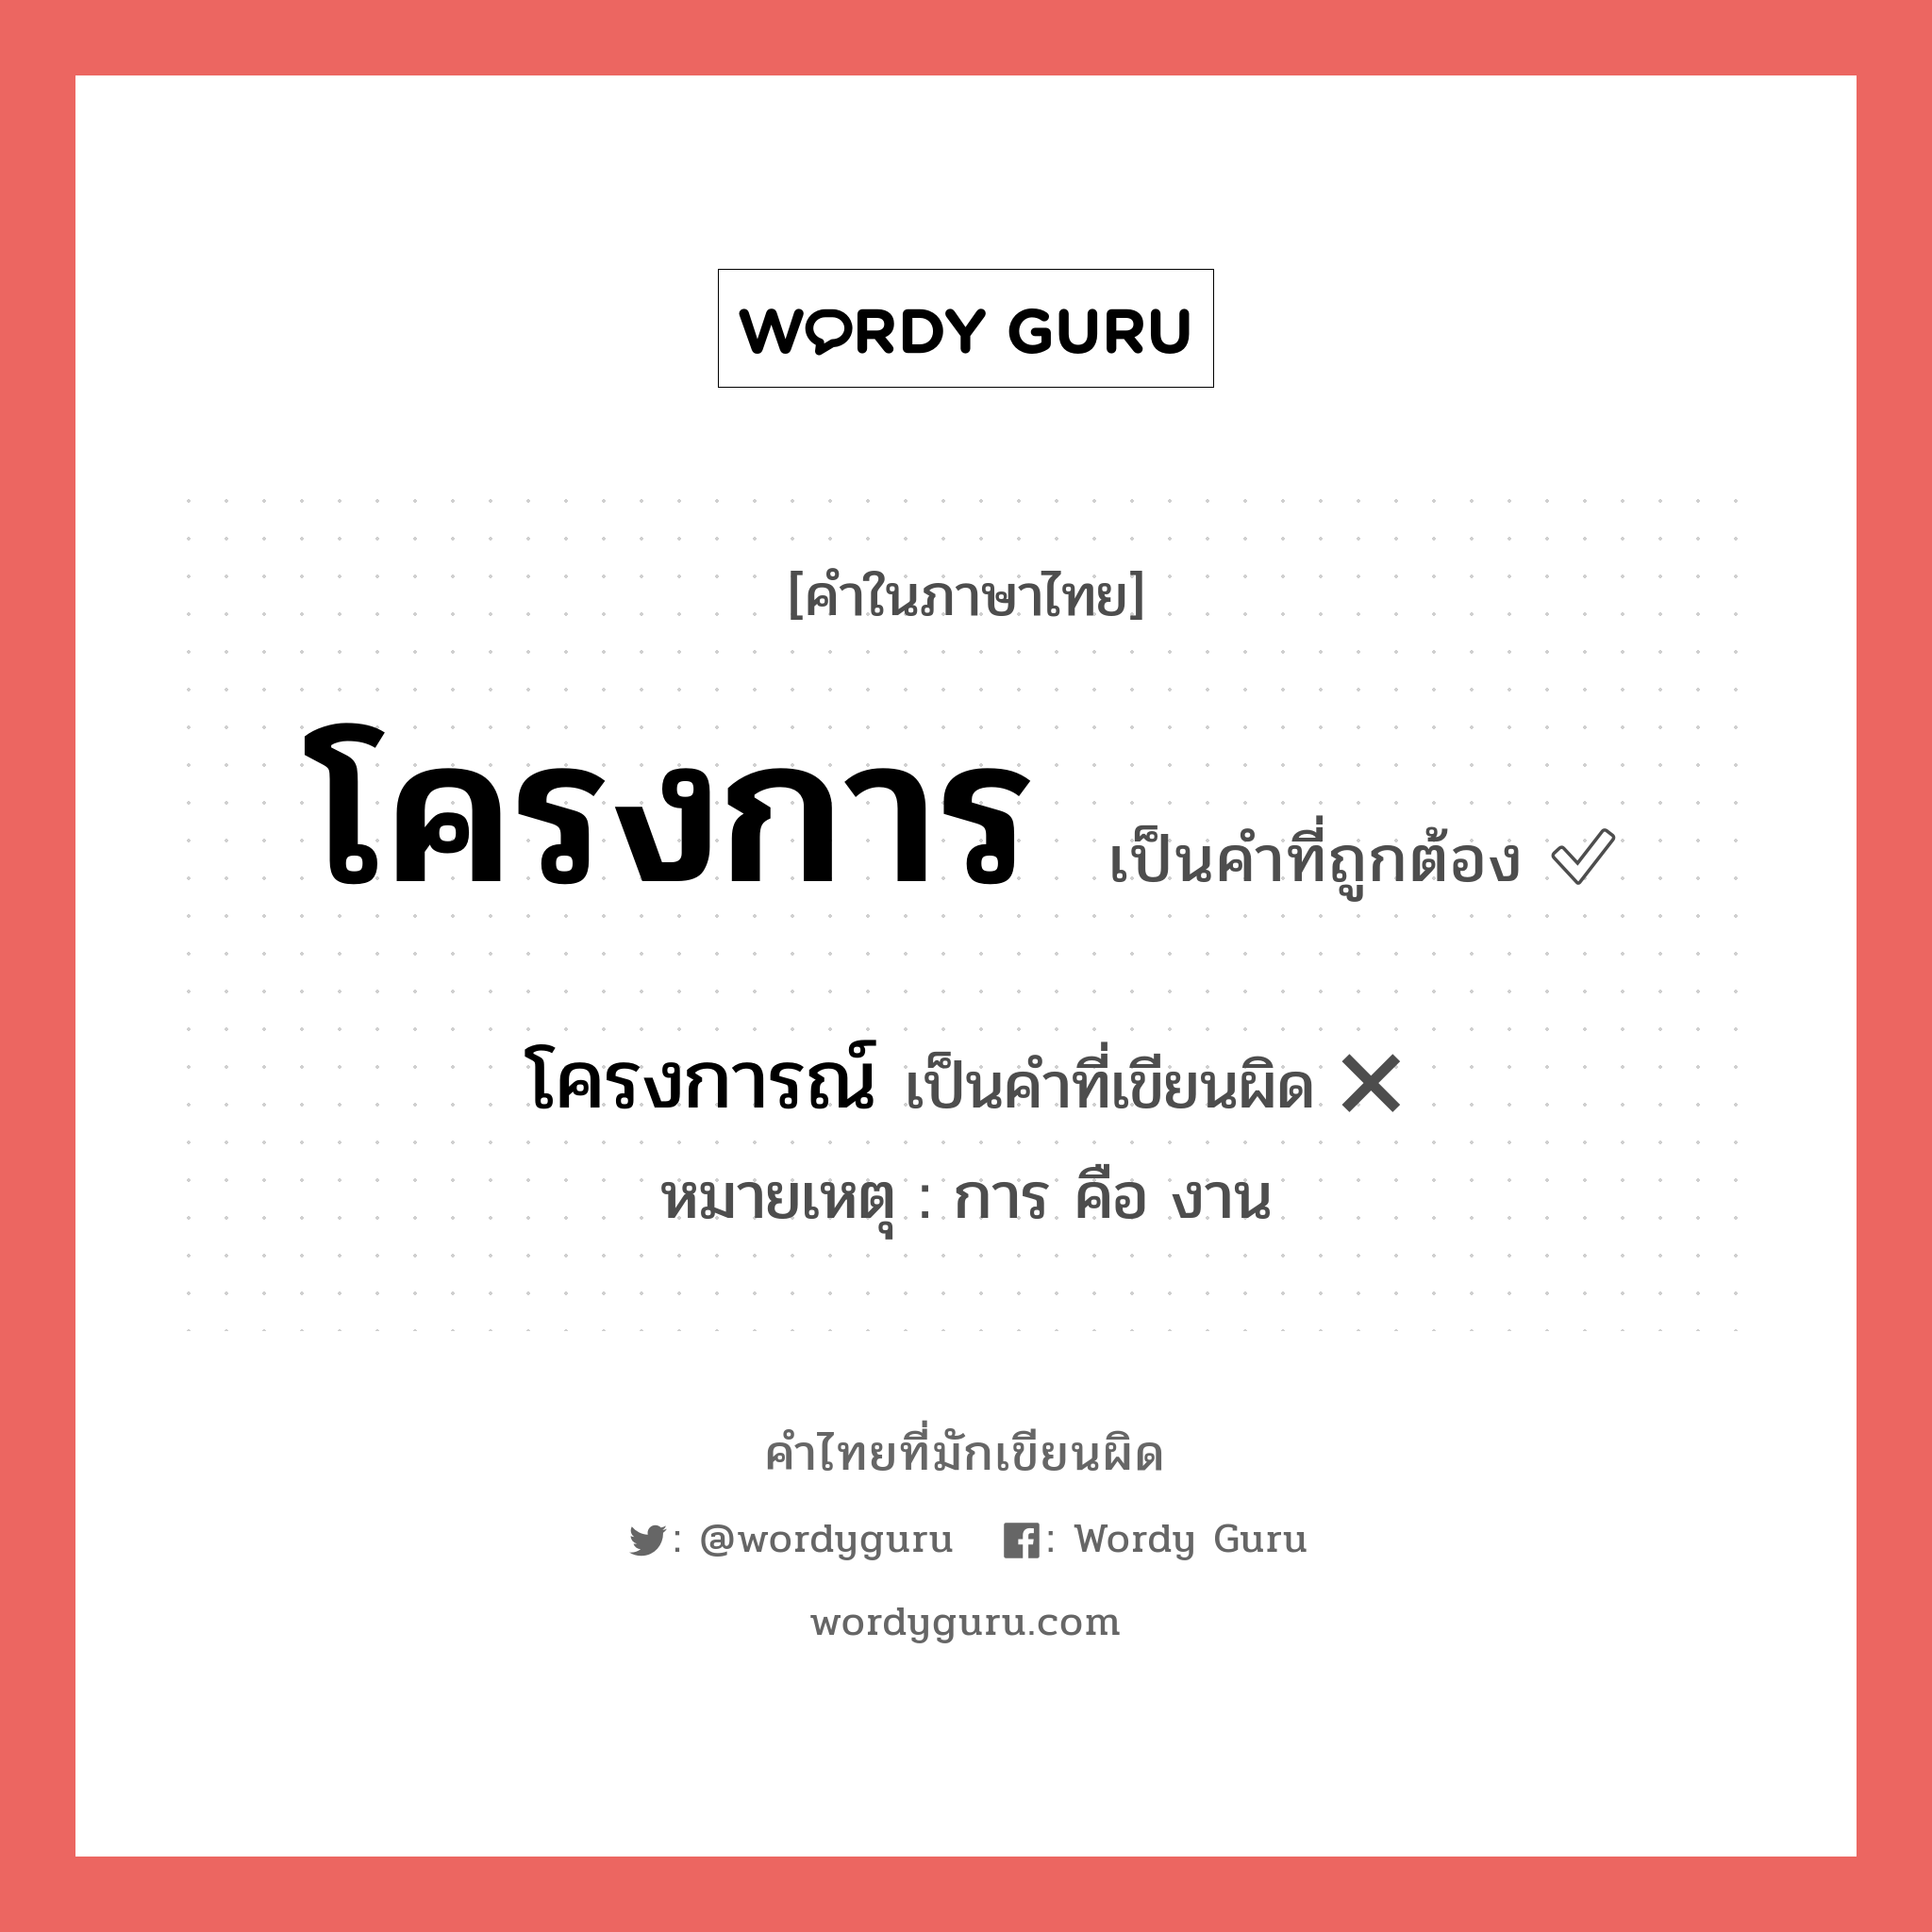 โครงการ หรือ โครงการณ์ คำไหนเขียนถูก?, คำในภาษาไทยที่มักเขียนผิด โครงการ คำที่ผิด ❌ โครงการณ์ หมายเหตุ การ คือ งาน